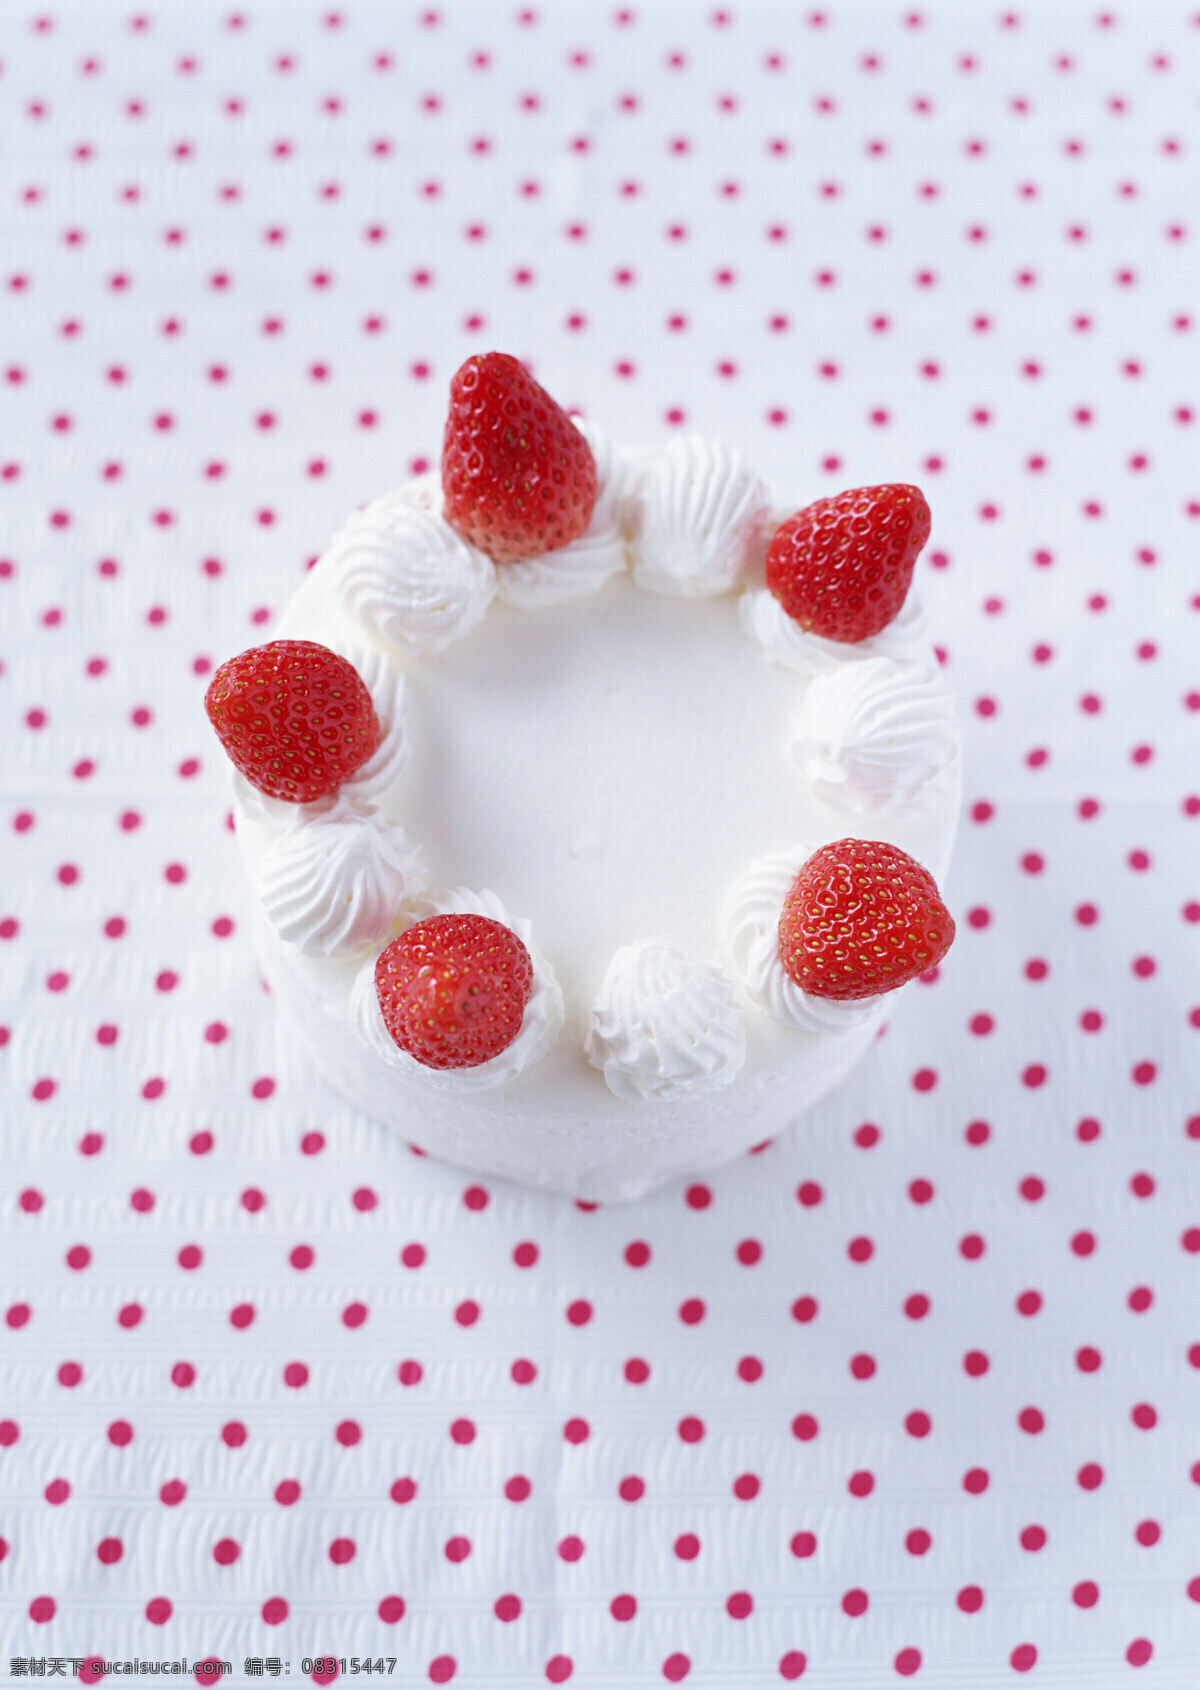 高清图片 蛋糕 慕斯蛋糕 水果蛋糕 草莓 草莓蛋糕 手工 烘焙 甜品 甜点 餐饮美食